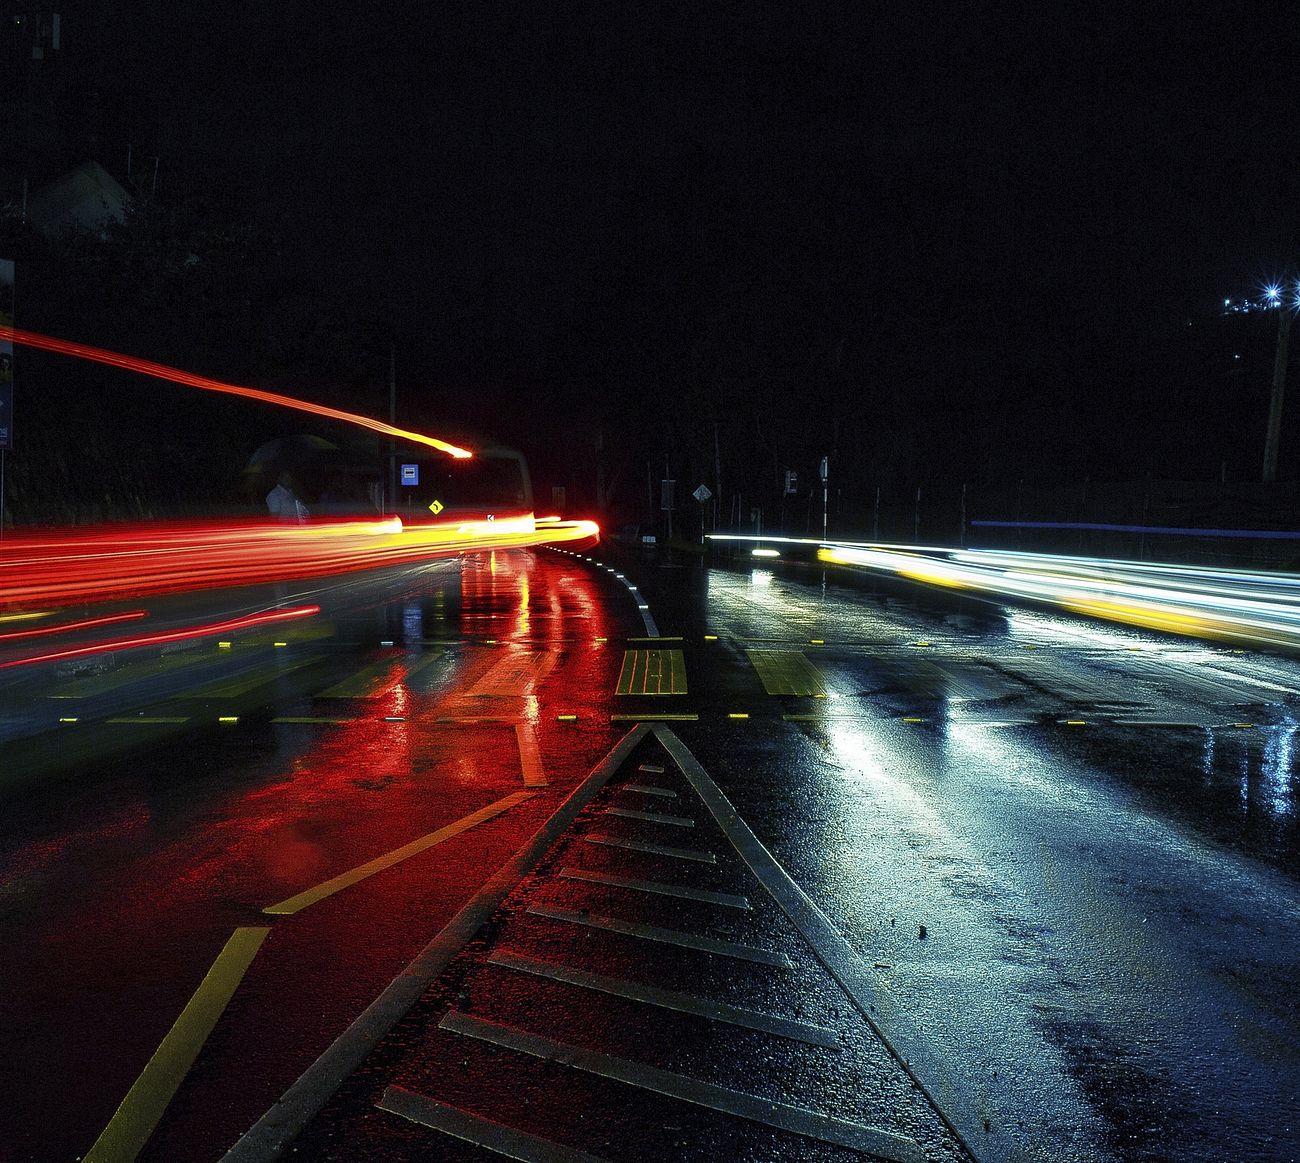 Multi-lane bridge at night with car